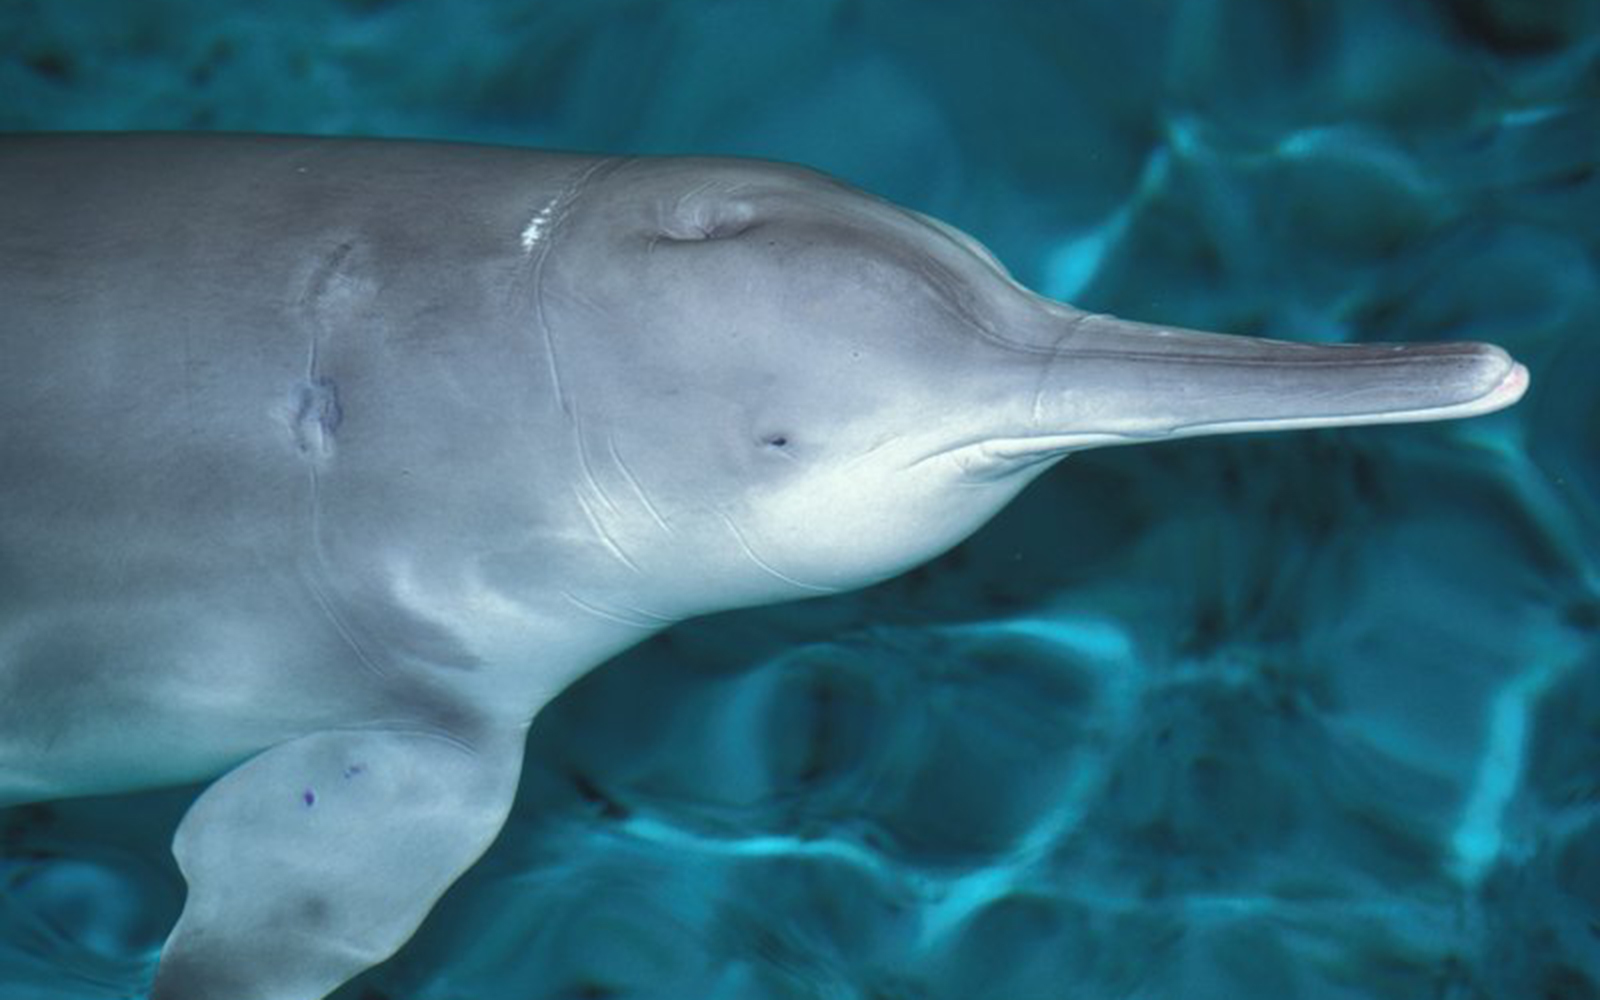 Гангский Дельфин